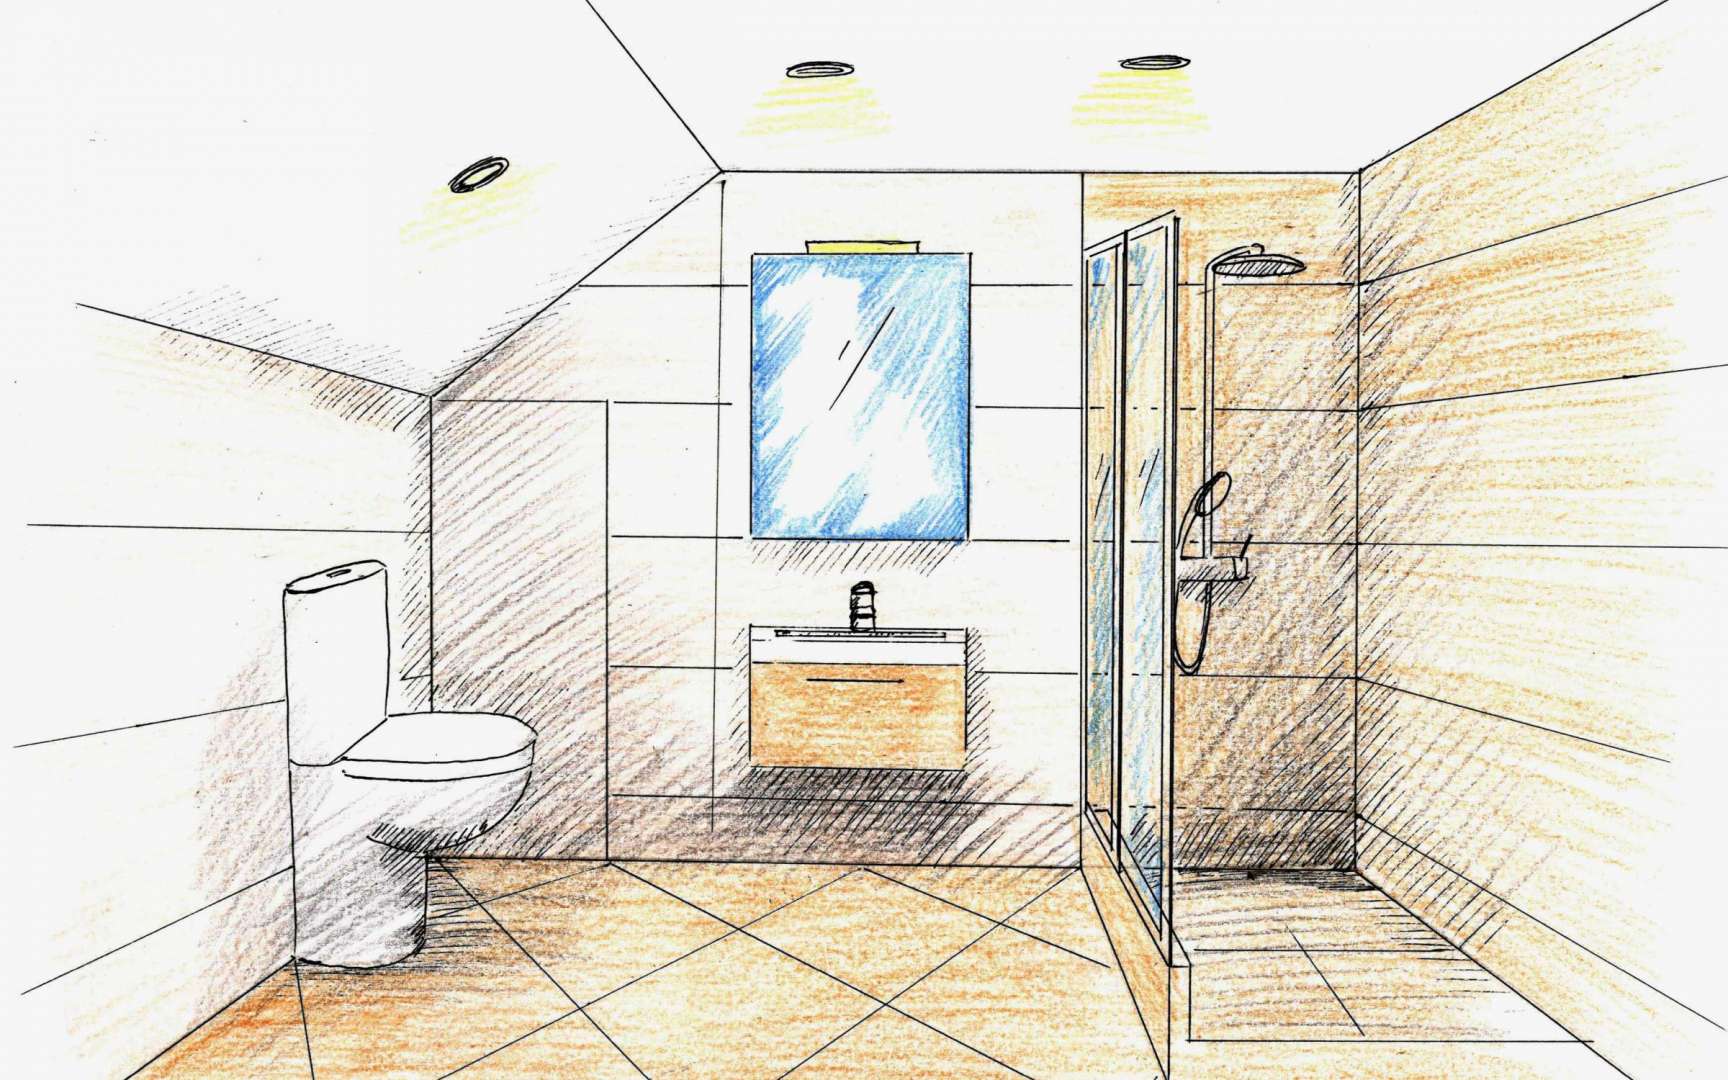 Ремонт ванной комнаты своими руками: план работ